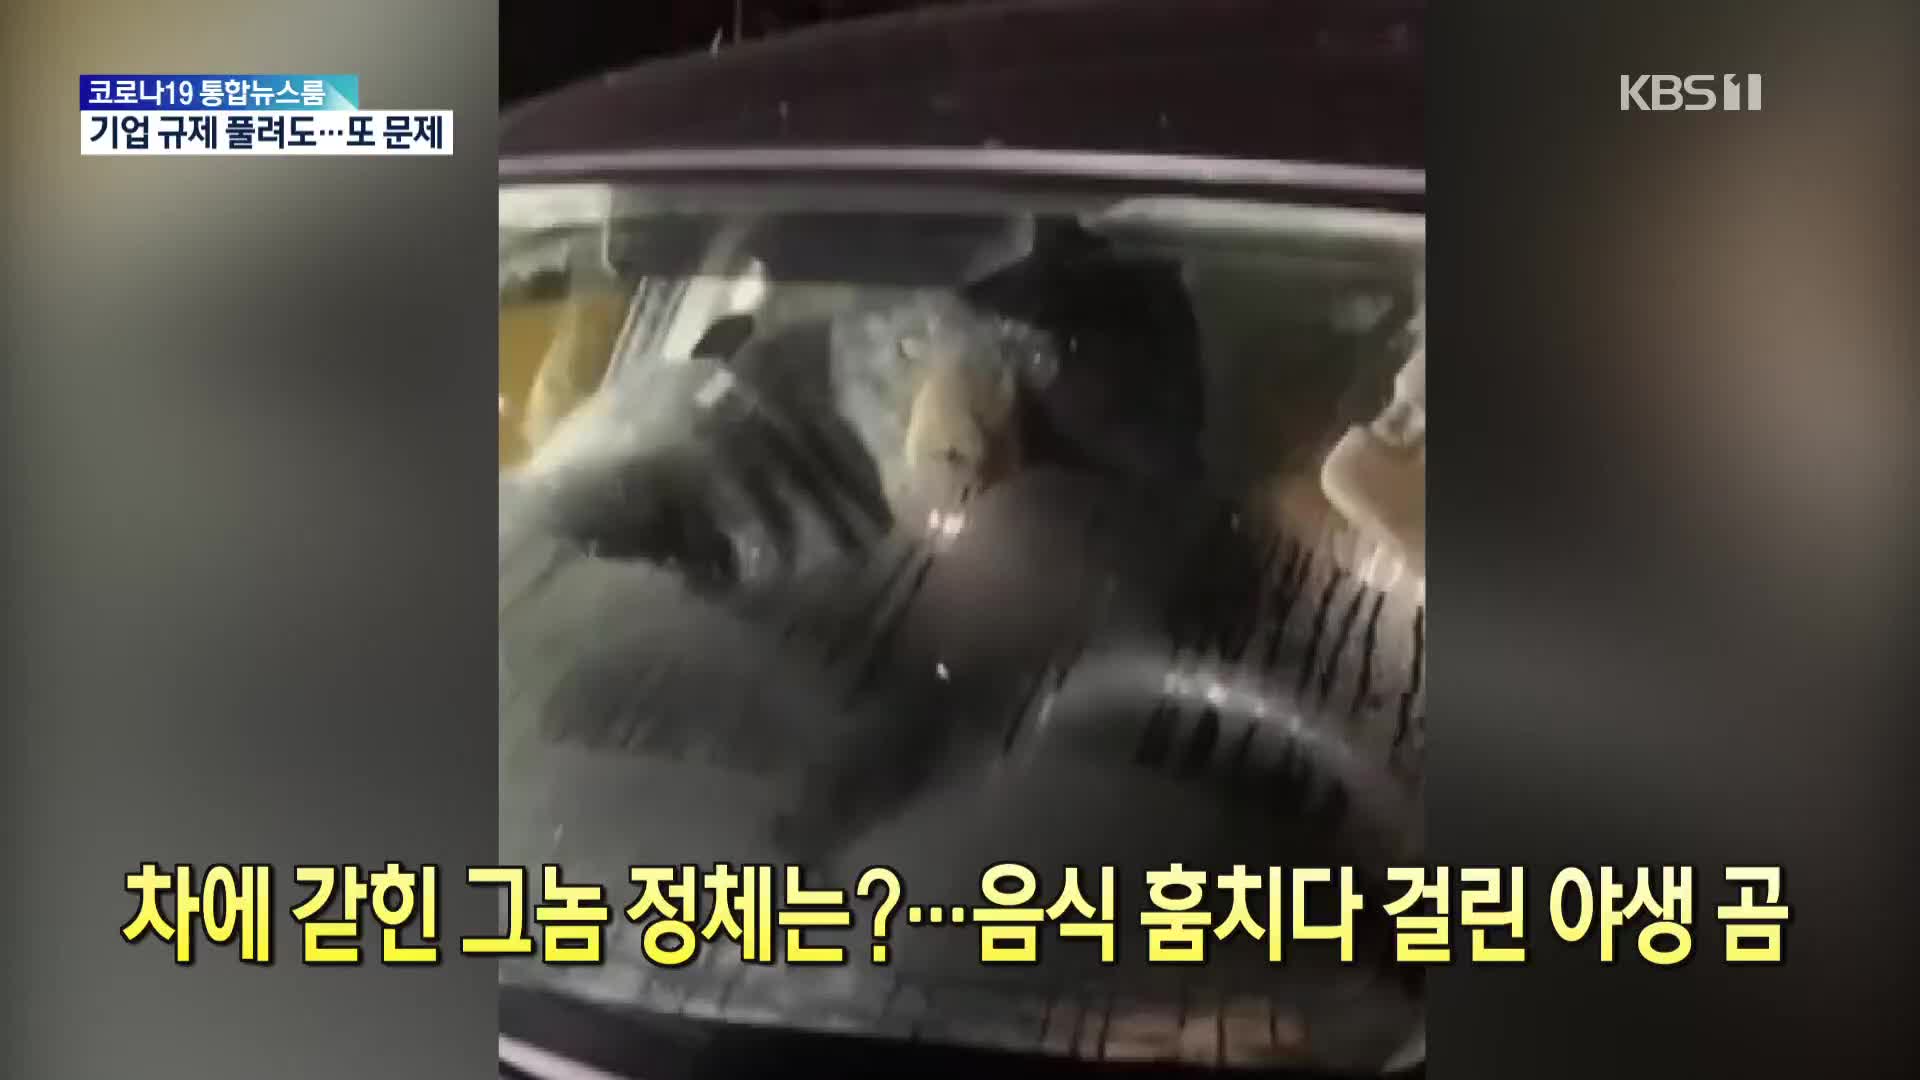 [톡톡 지구촌] 차에 갇힌 그놈 정체는?…음식 훔치다 걸린 야생 곰